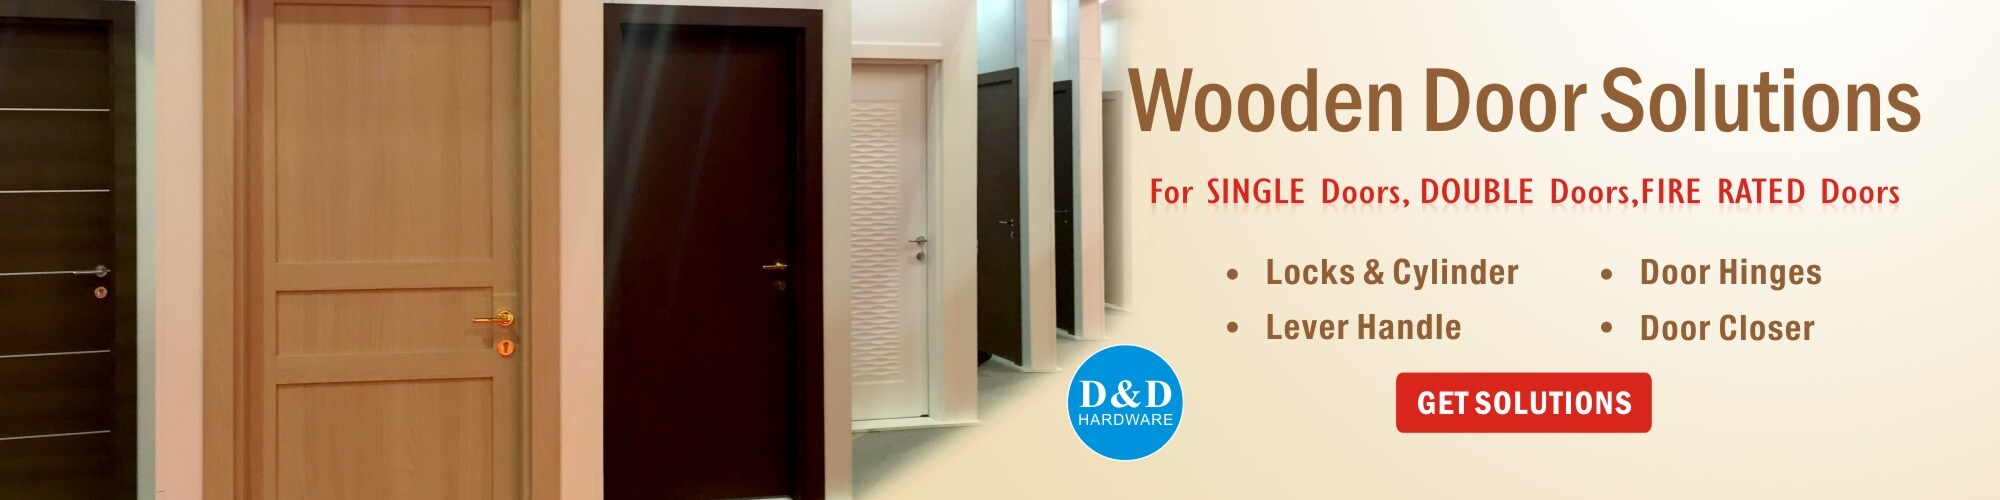 Wooden-Door solution